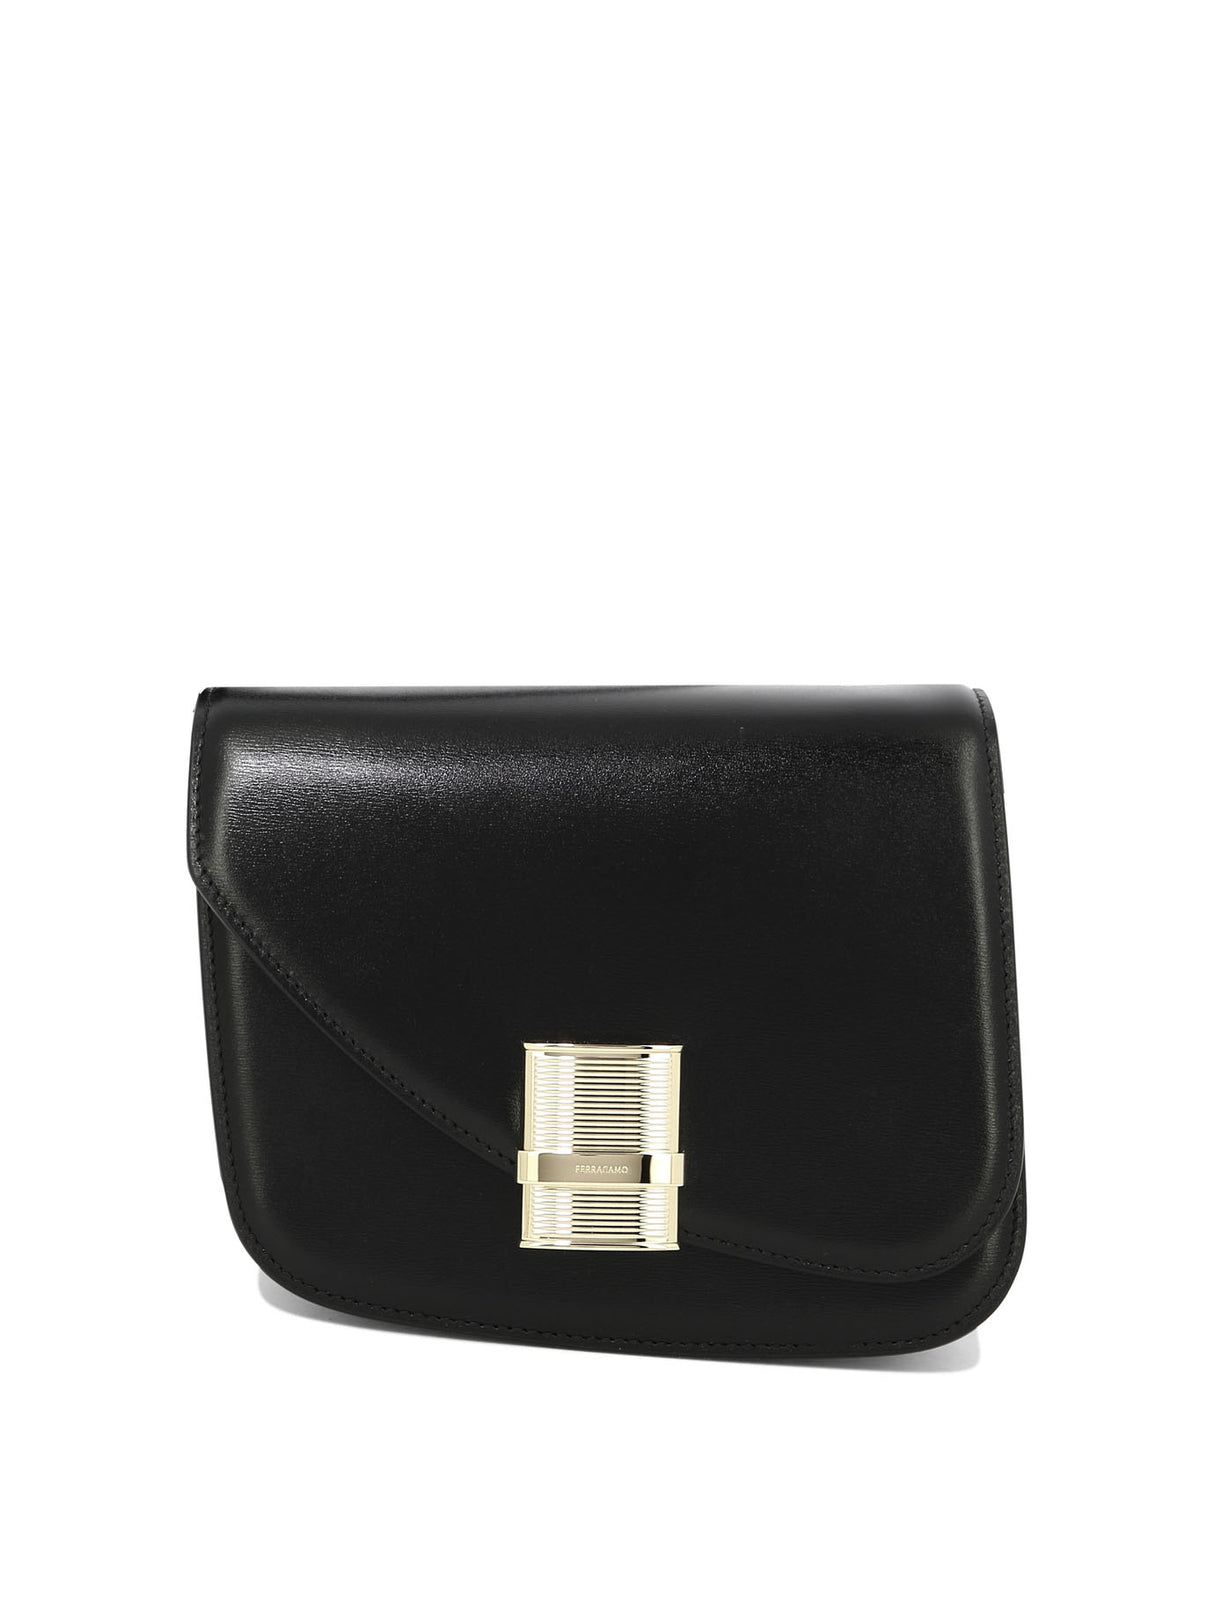 FERRAGAMO Stylish Fiamma Crossbody Handbag for Women